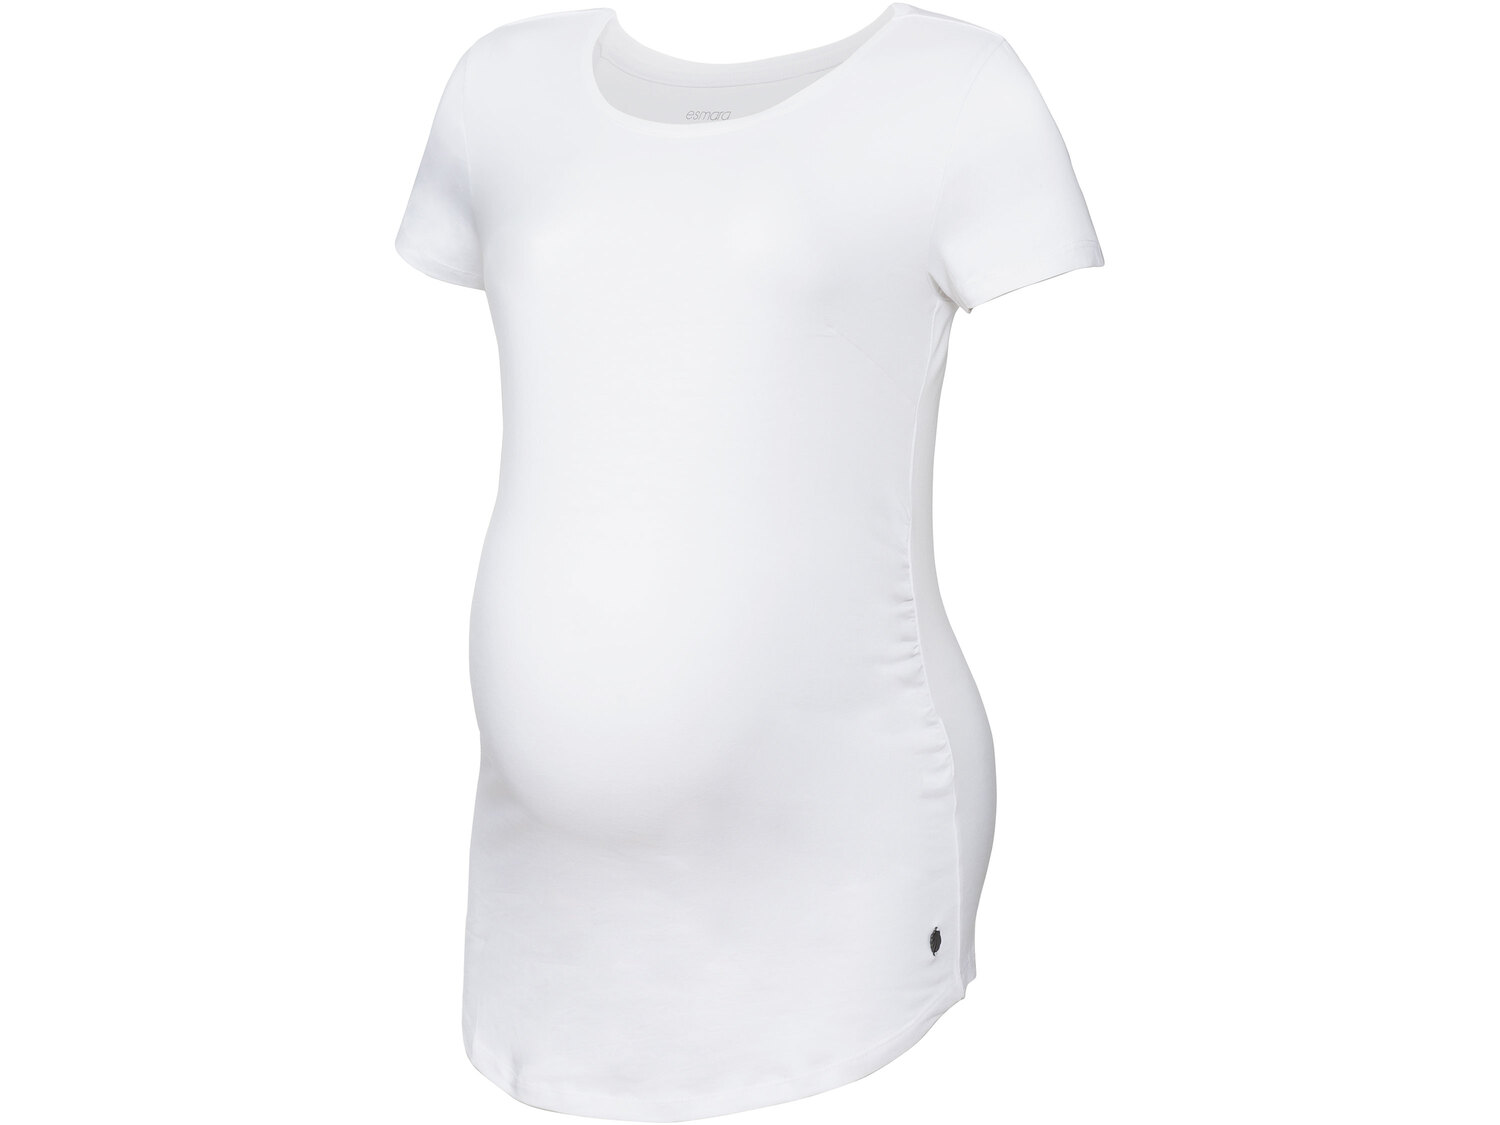 Koszulki ciążowe, 2 szt.* Esmara, cena 14,99 PLN 
*Artykuł dostępny wyłącznie ...